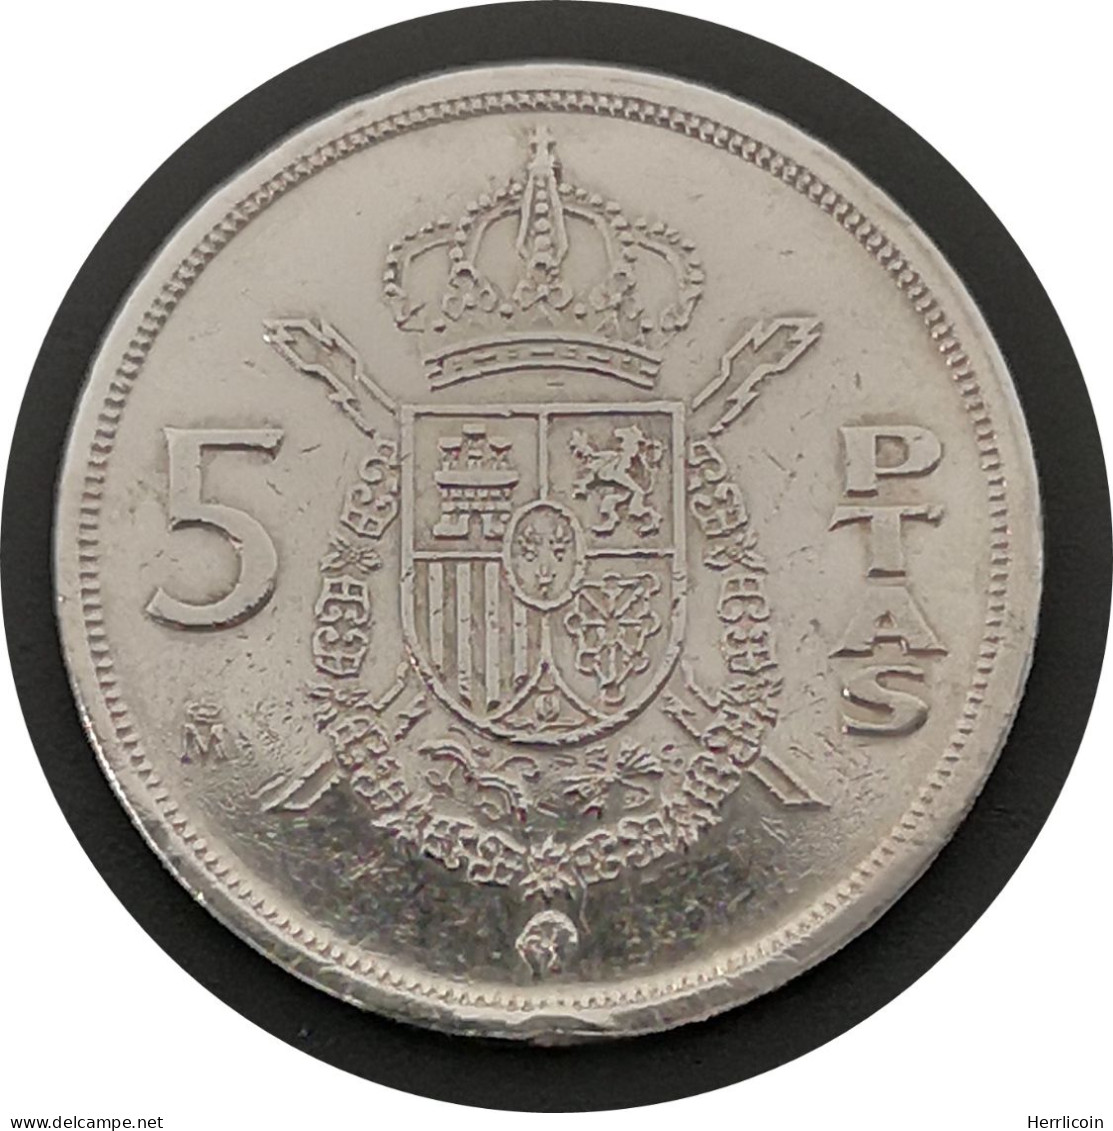 Monnaie Espagne - 1982 - 5 Pesetas Juan Carlos I M Couronné - 5 Pesetas